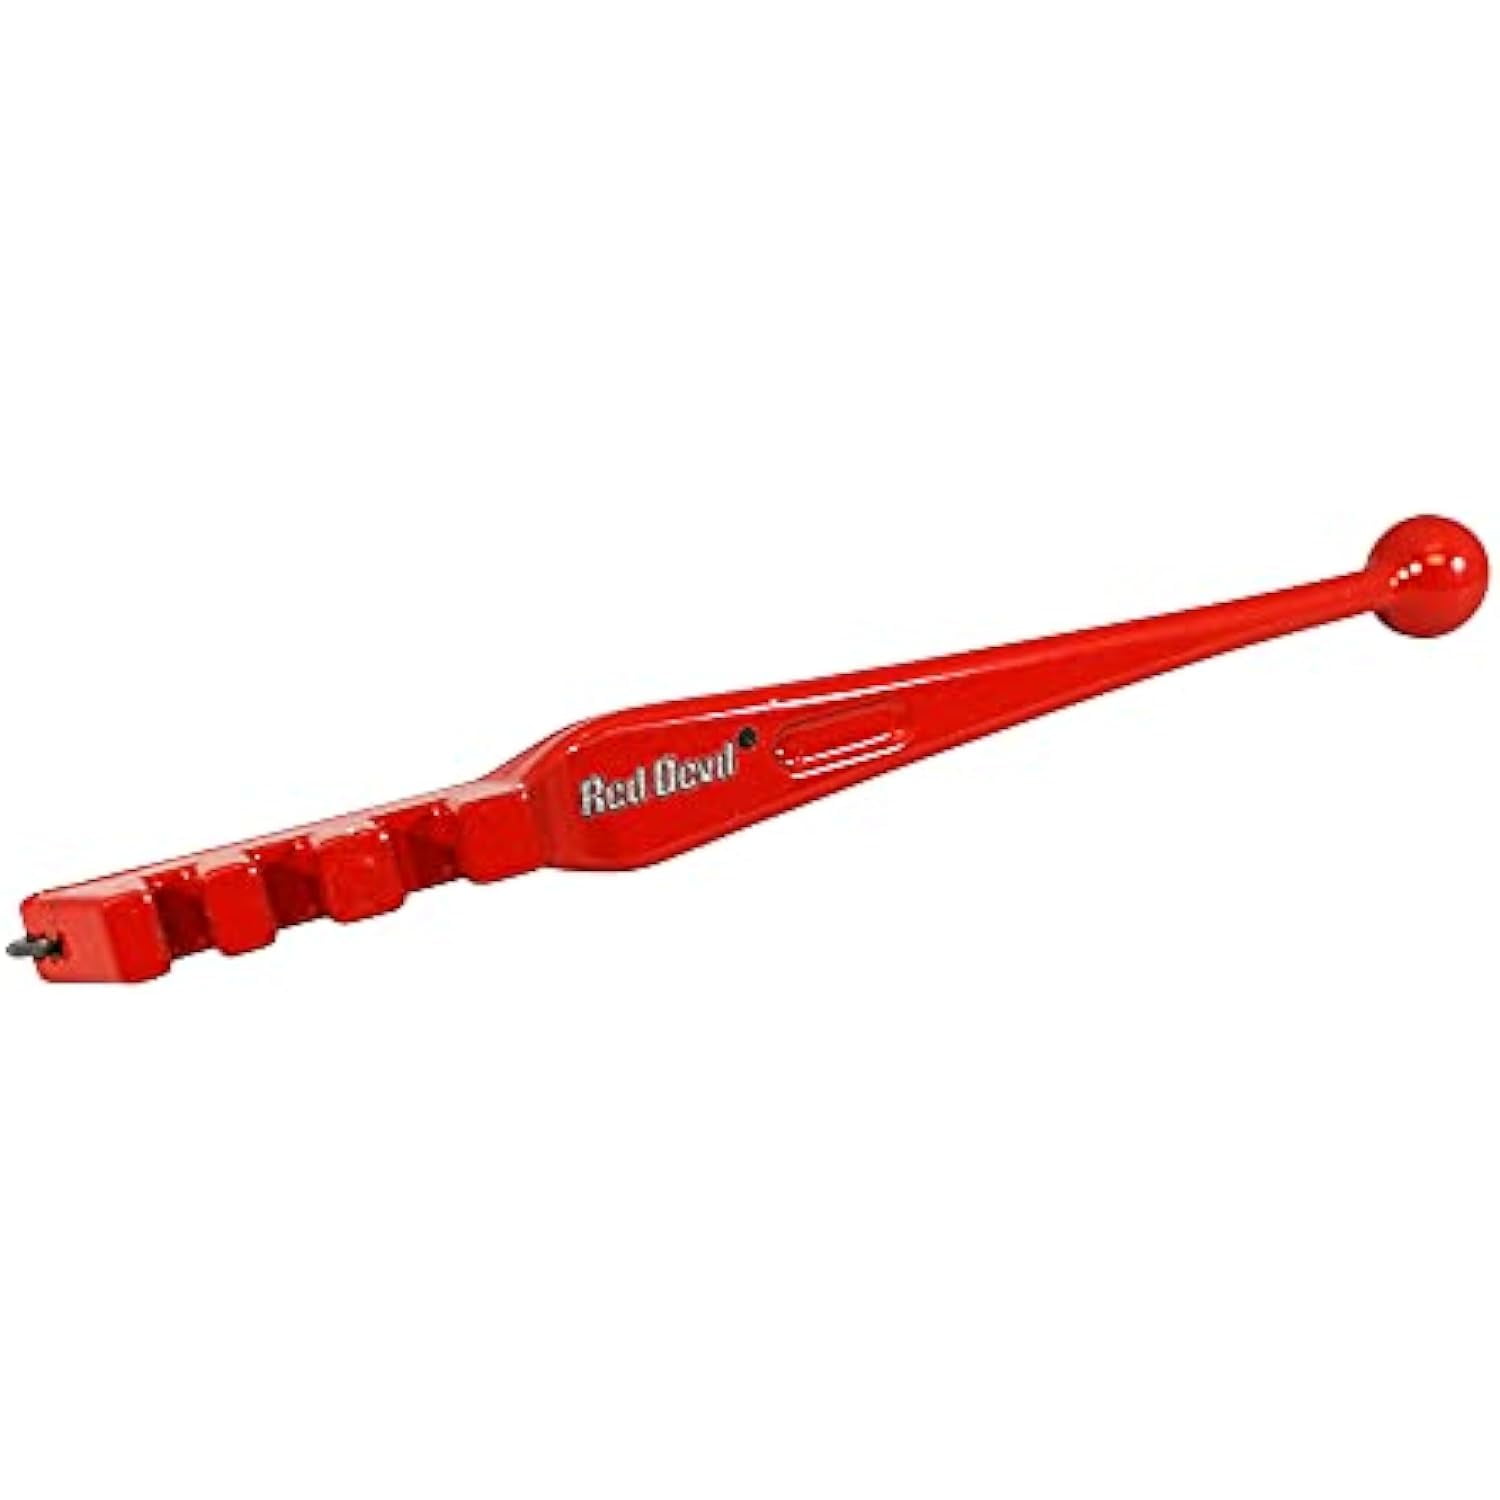 Red Devil 1170 PLEXIGLASS Scoring Tool, 1-Pack - Glass Cutting Tools 